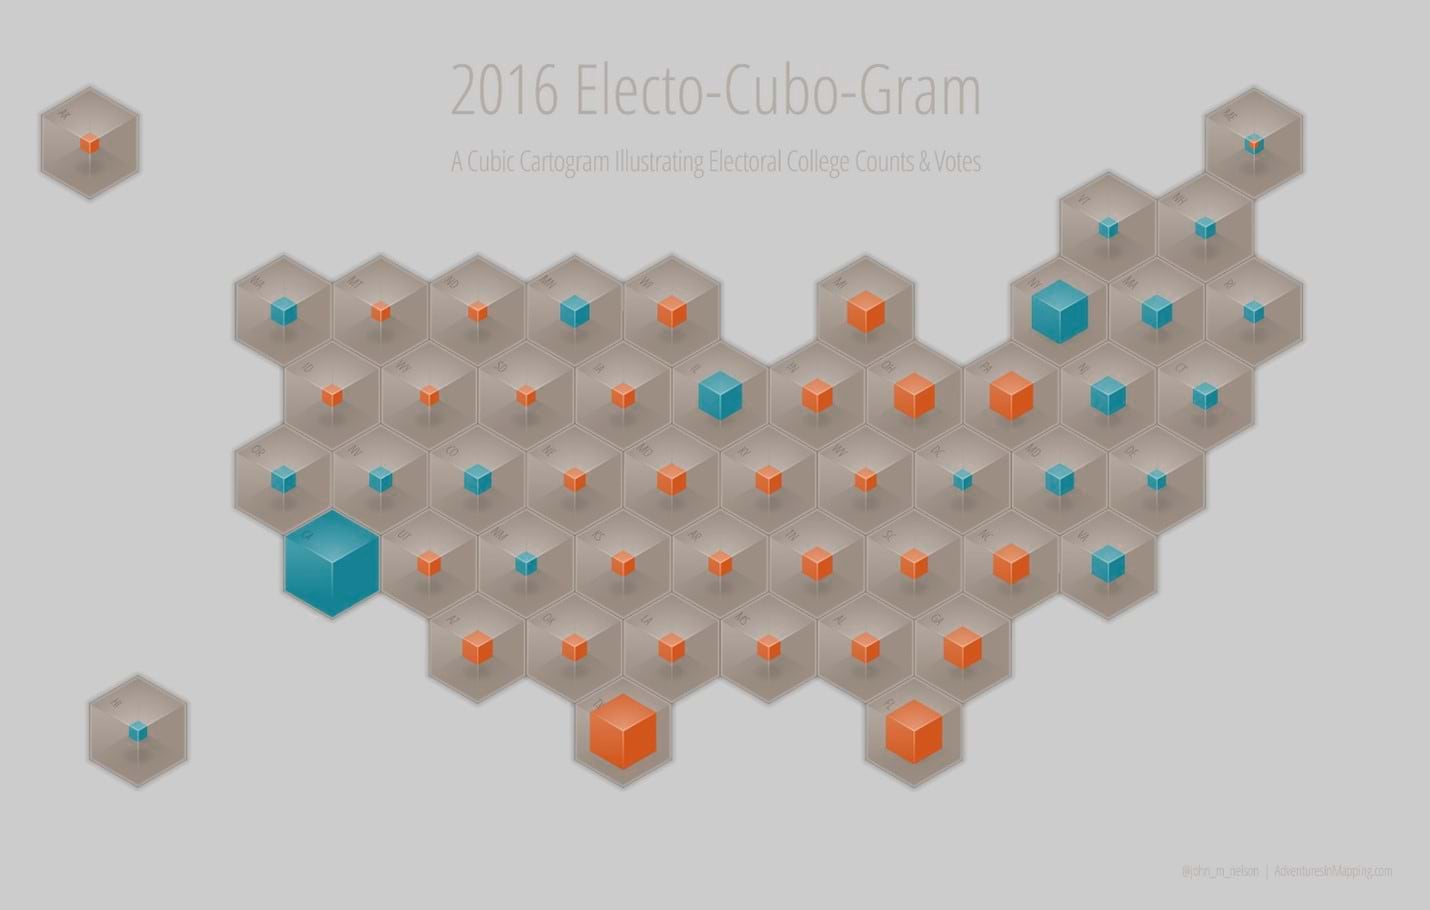 Electo-cubo-gram